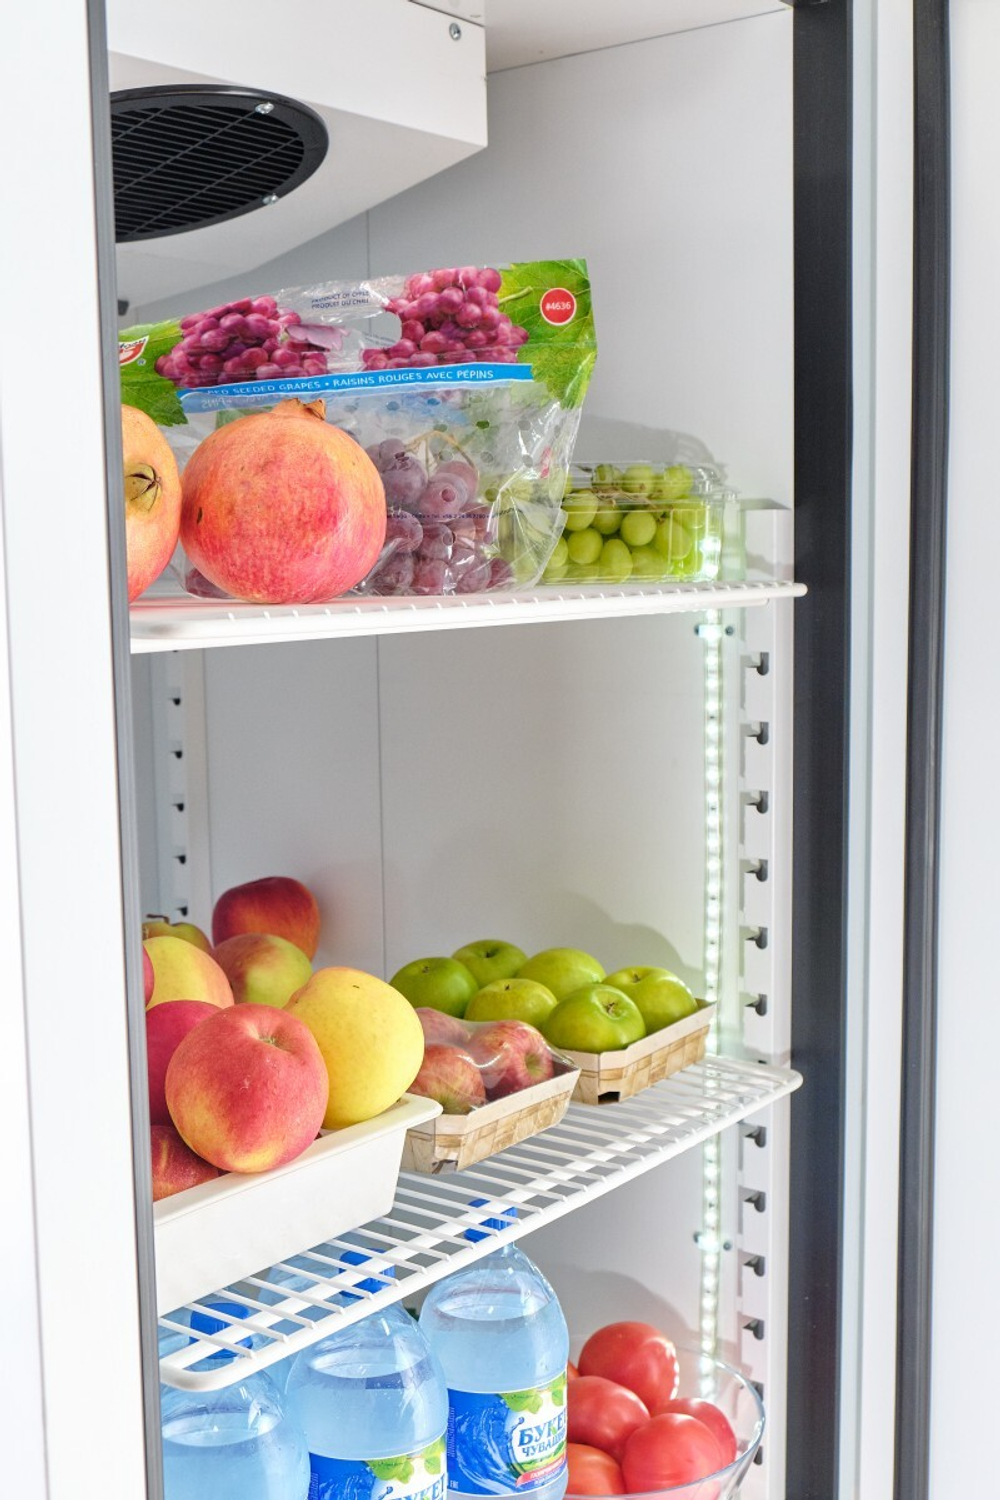 Шкаф холодильный среднетемпературный ШХс-1,4-02 краш. (нижний агрегат)